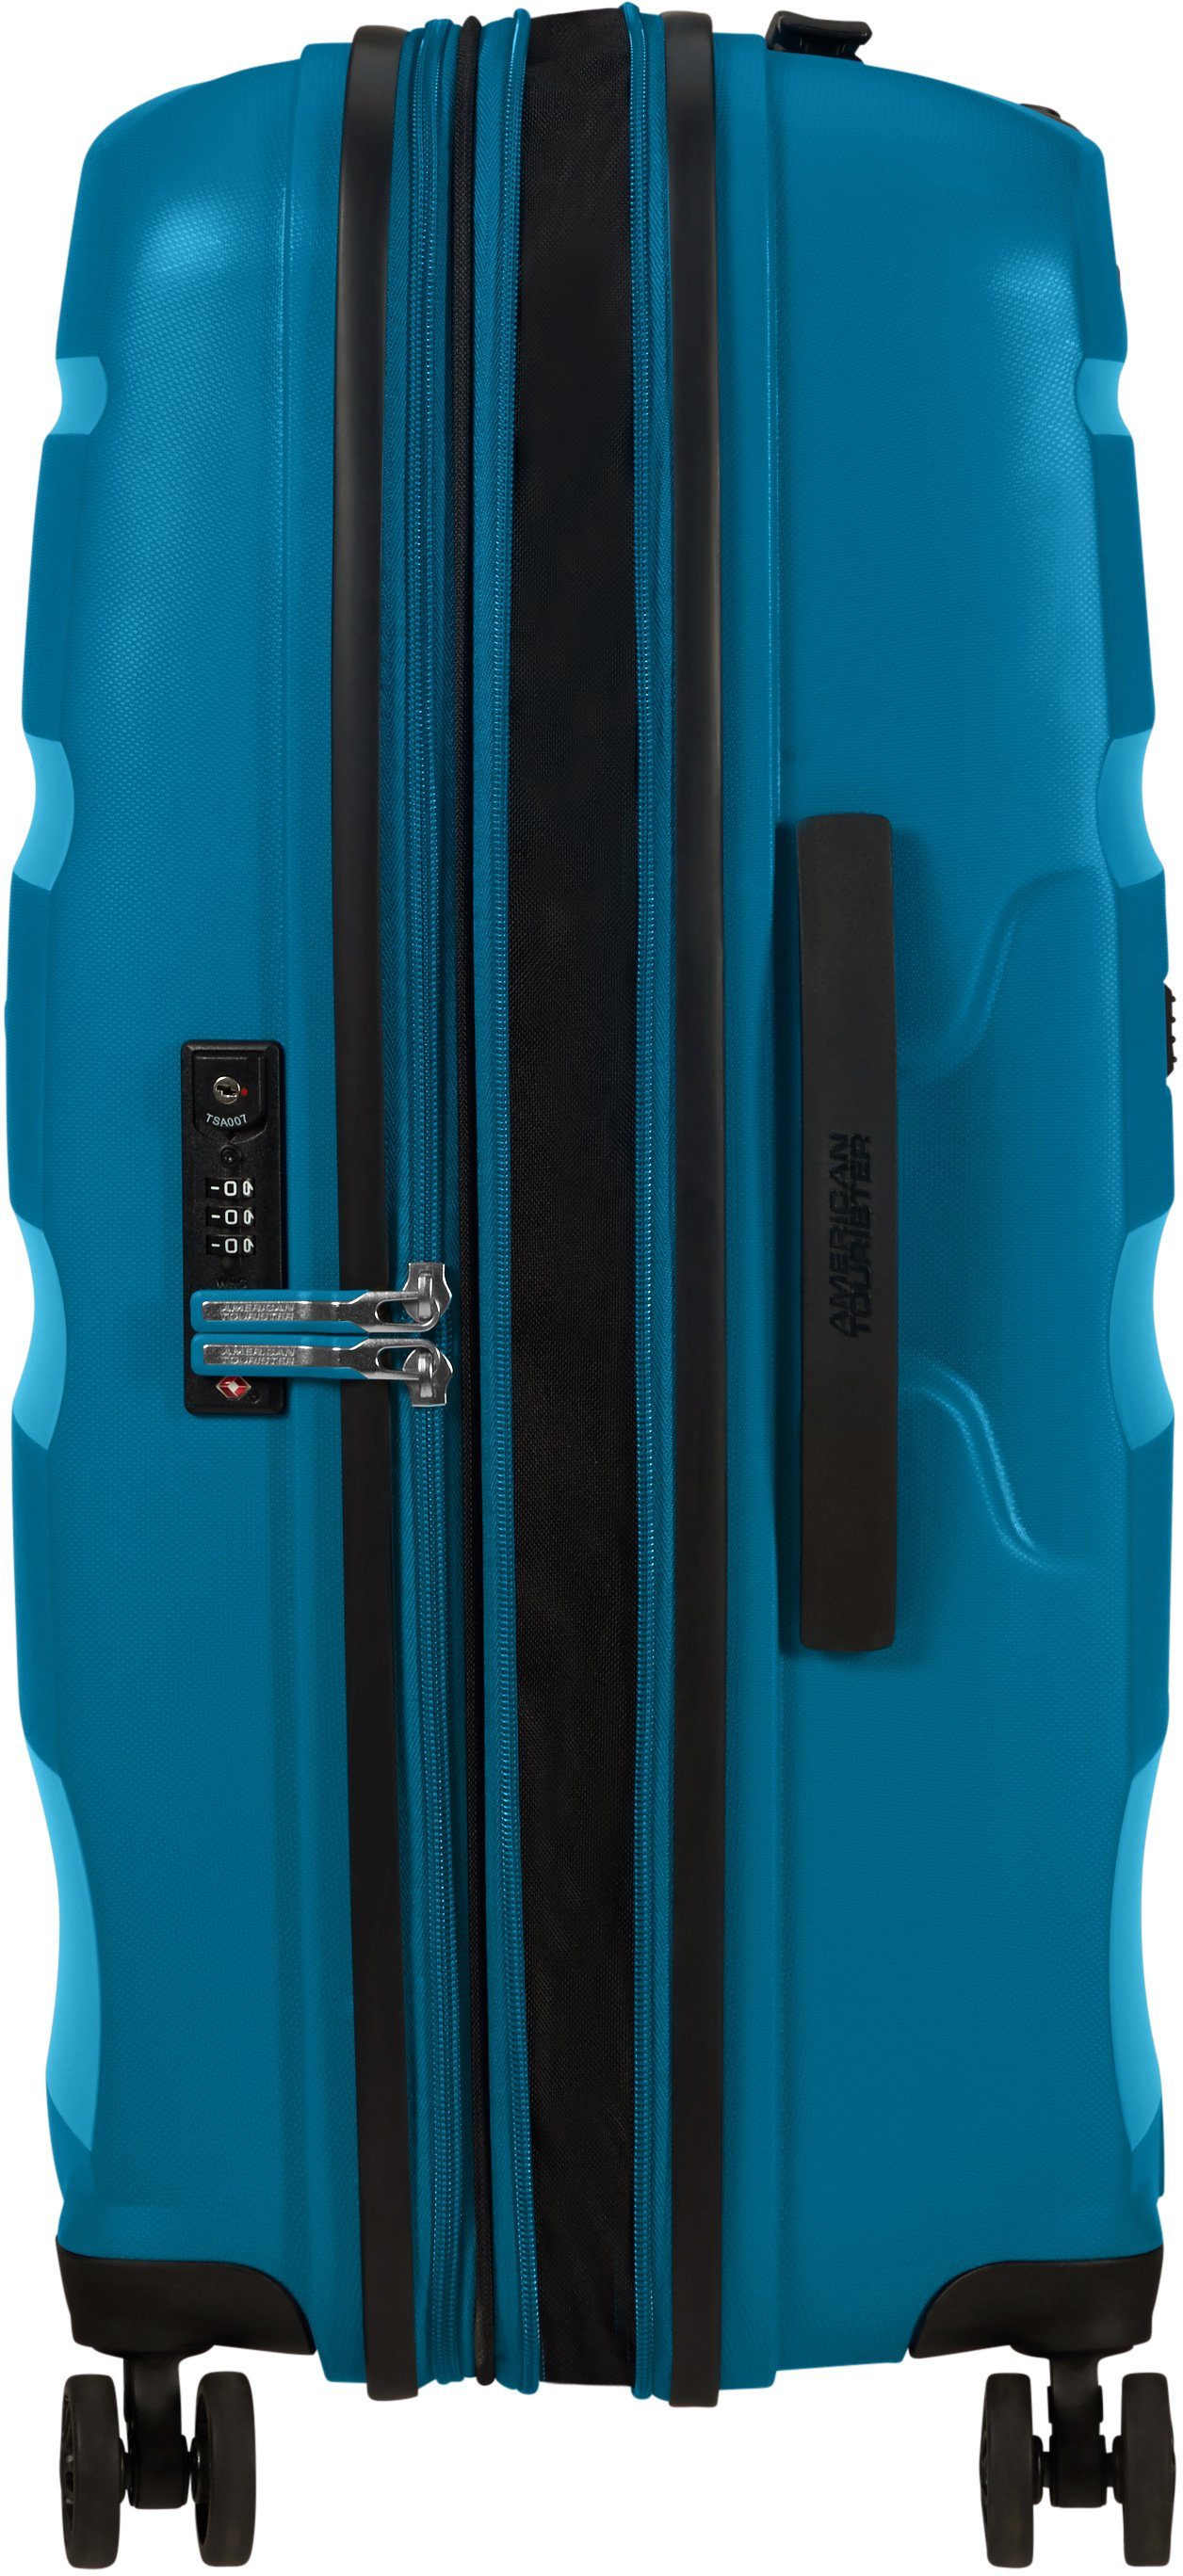 Bon Rollen, mit Tourister® 4 American Air Hartschalen-Trolley Volumenerweiterung cm, Blue Seaport DLX, 66